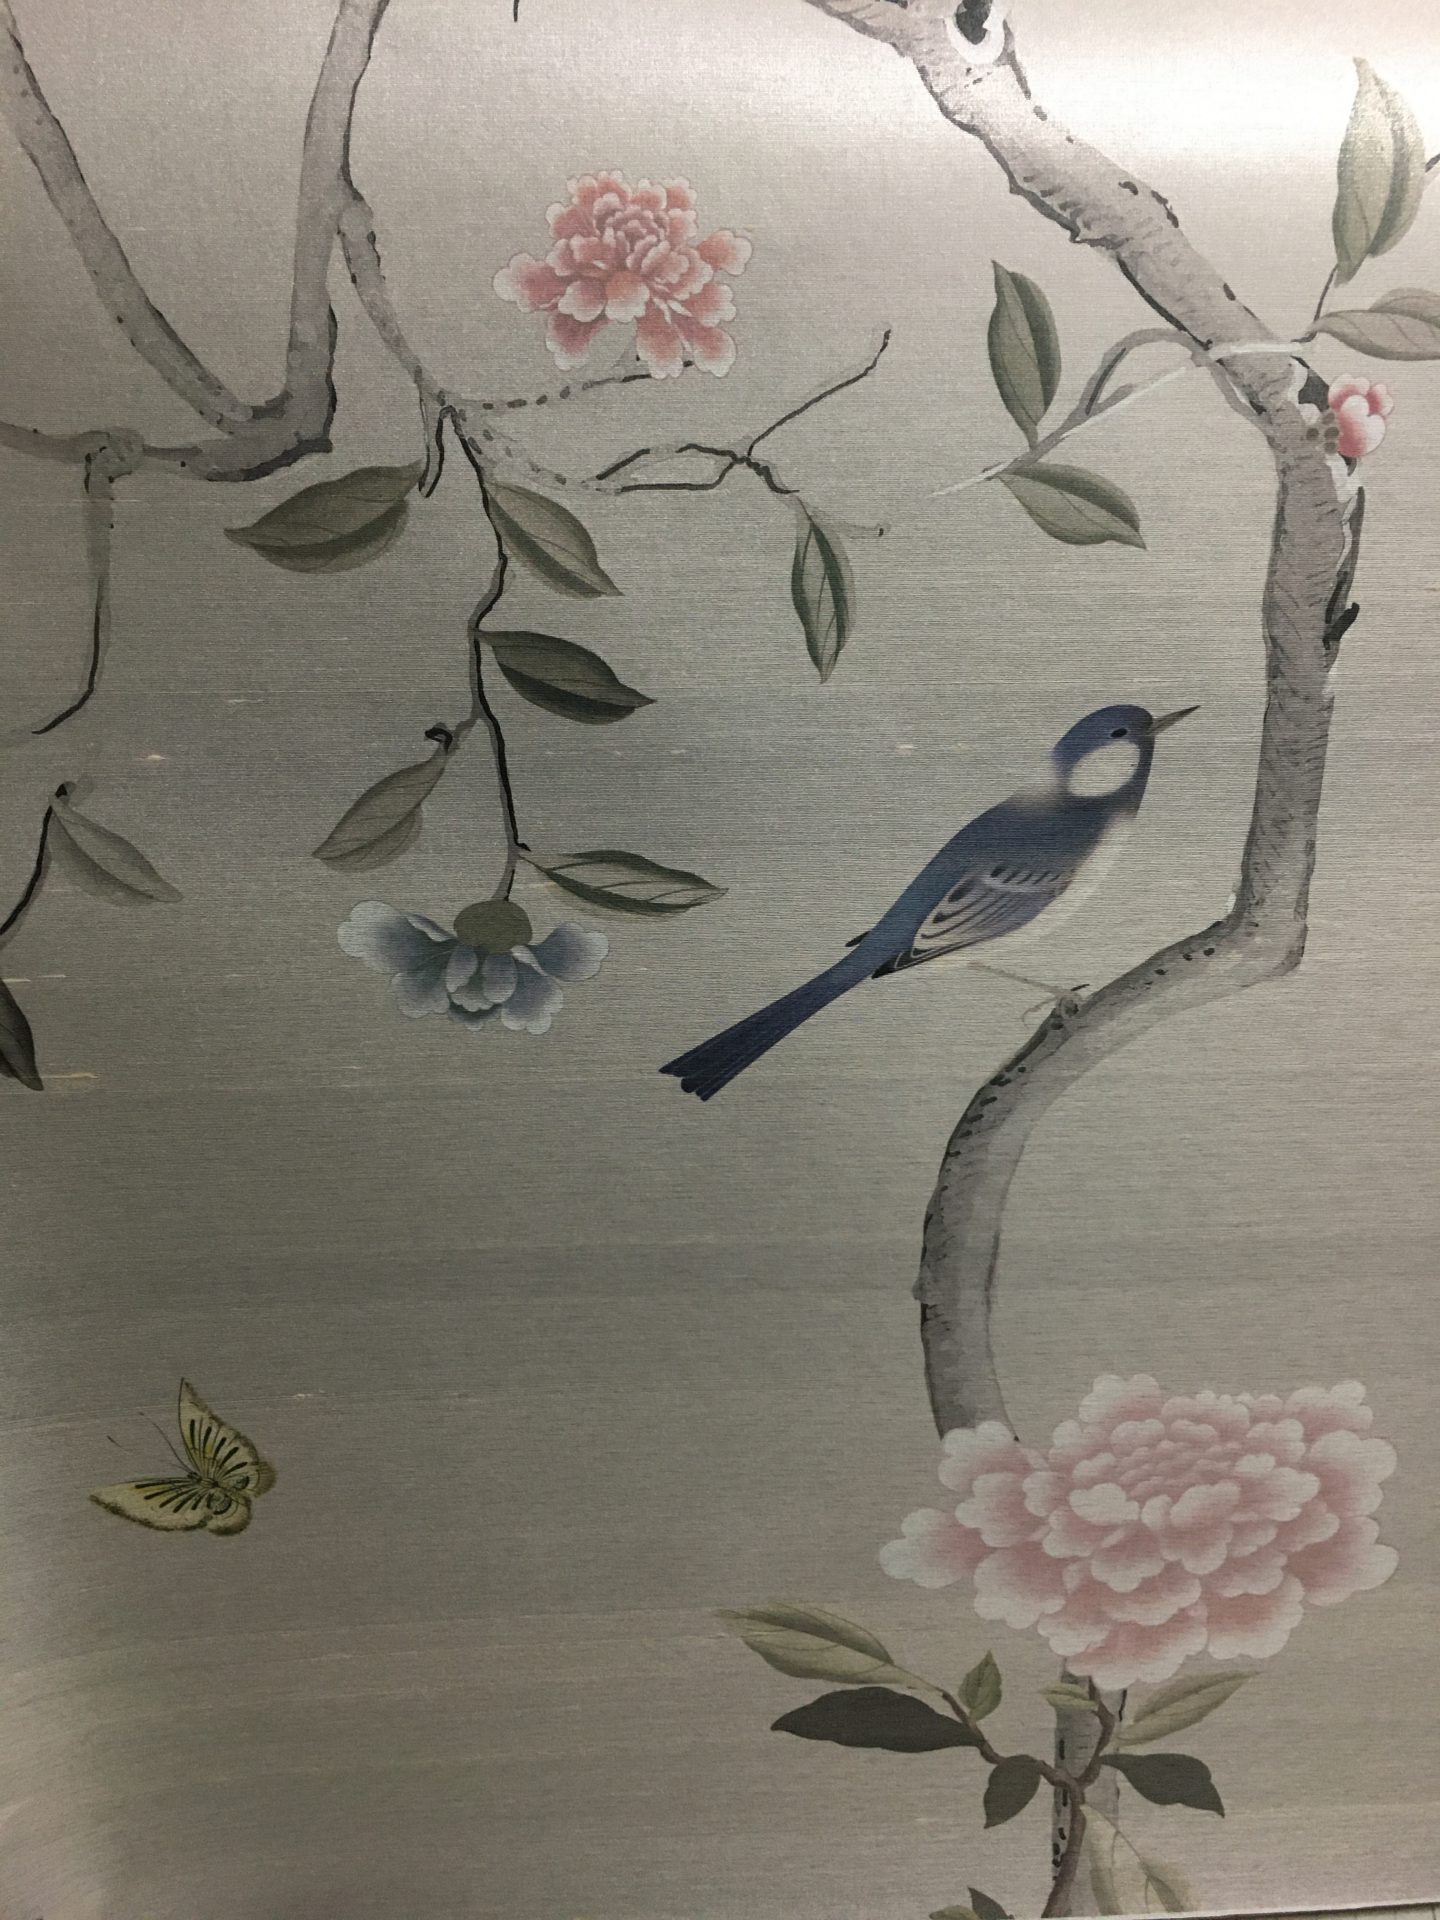 メイドインジャパン 京丹後で織られたシルク壁紙 リサブレア 神戸のインテリアデザインショップ